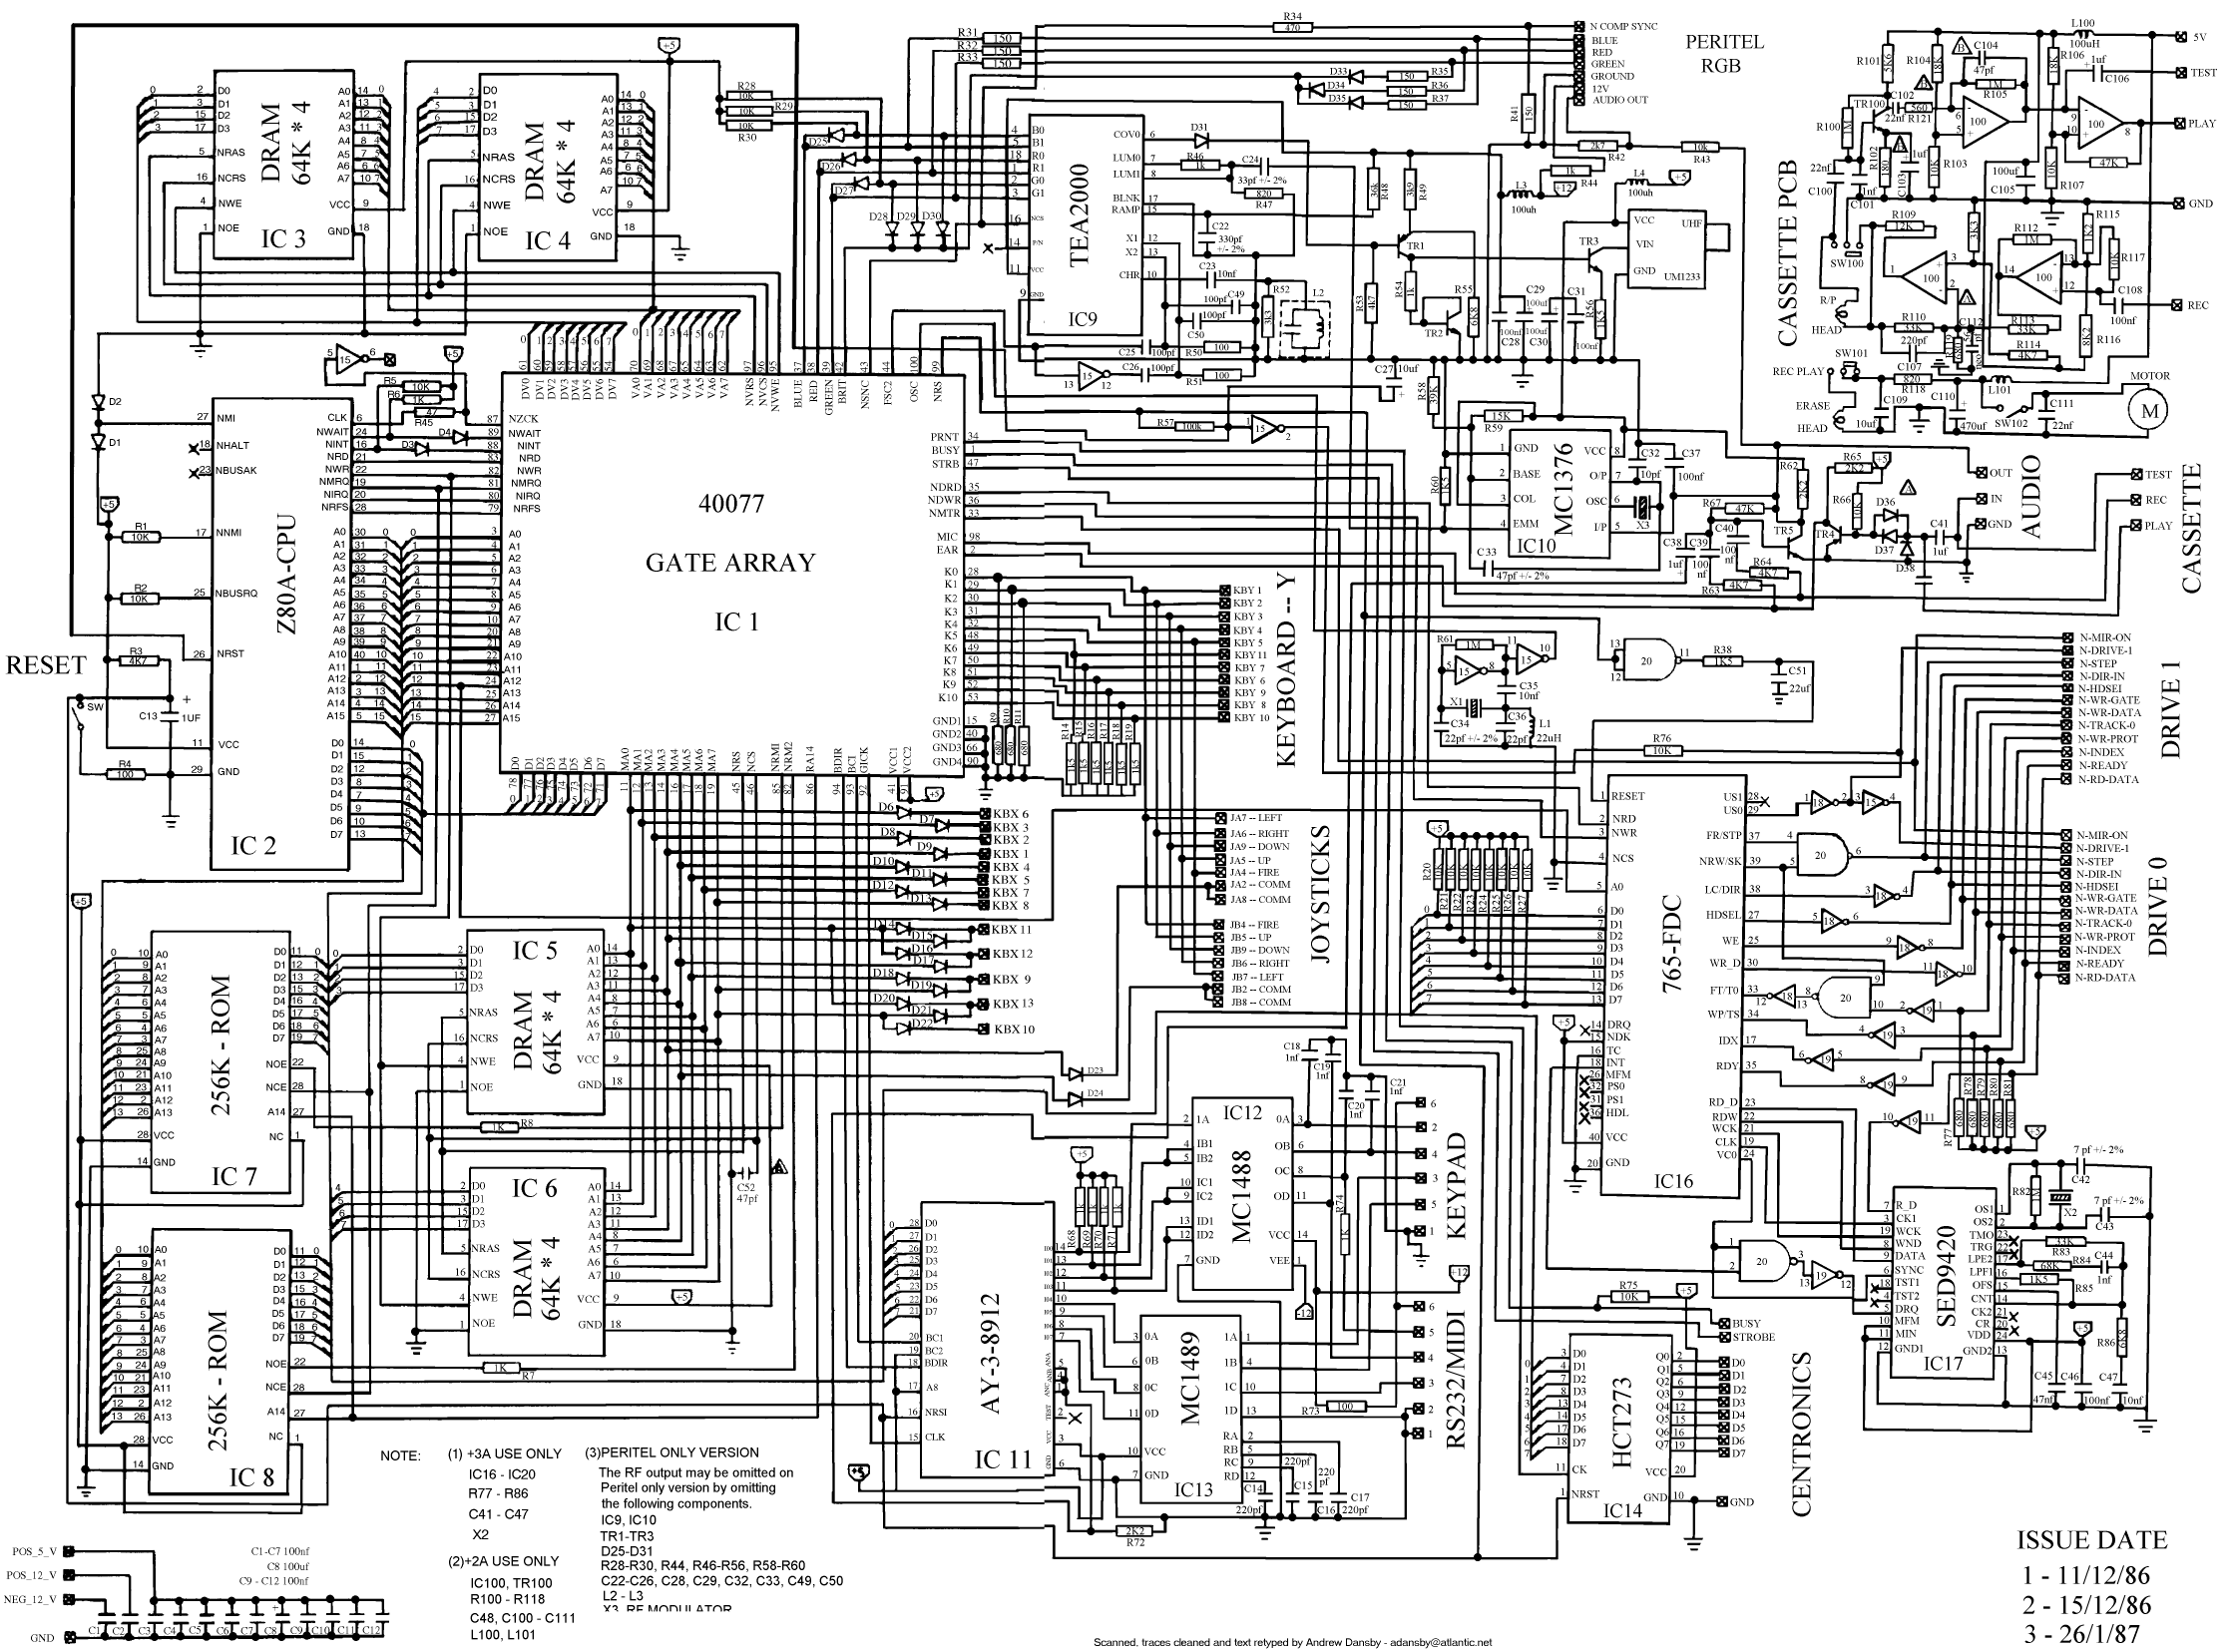 motherboards, circuits - desktop wallpaper